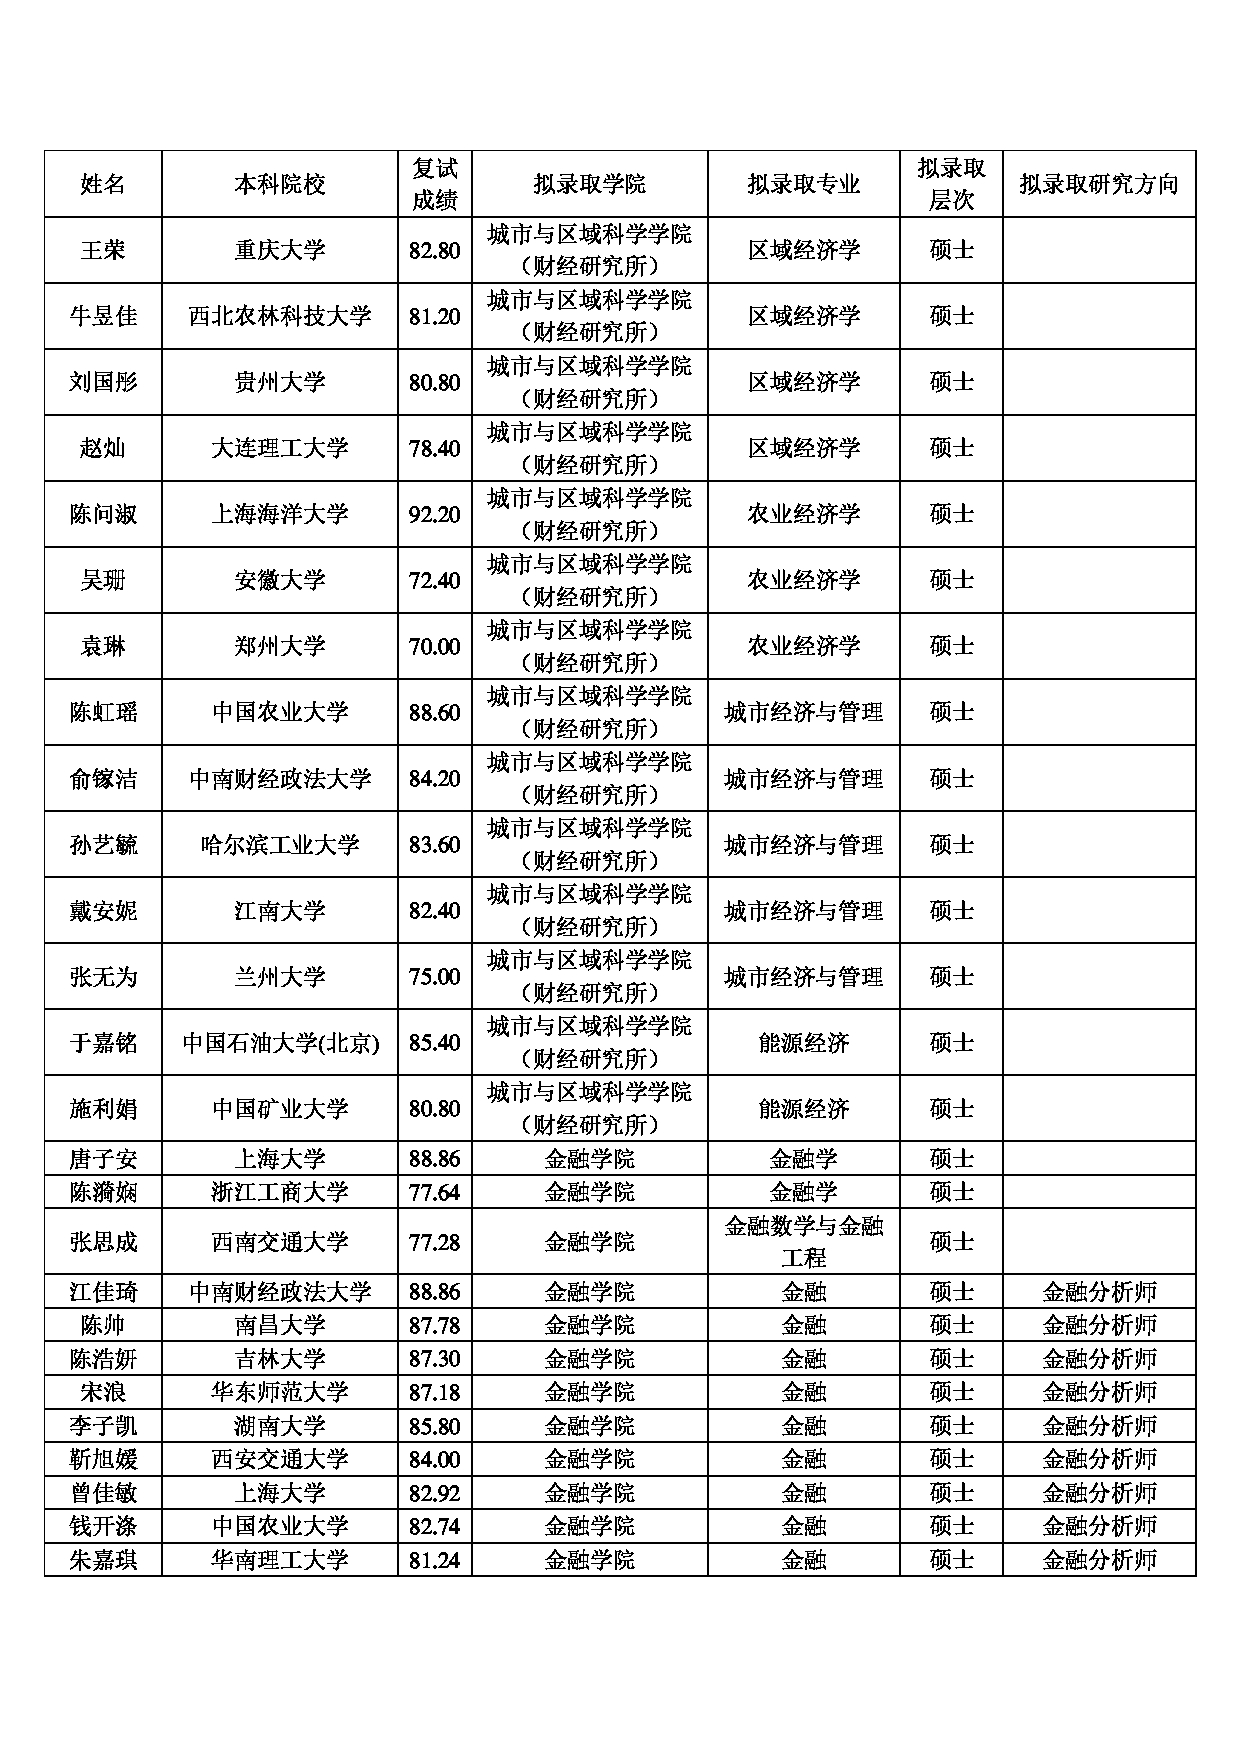 2022考研拟录取名单：上海财经大学2022年推免硕士研究生拟录取名单第5页